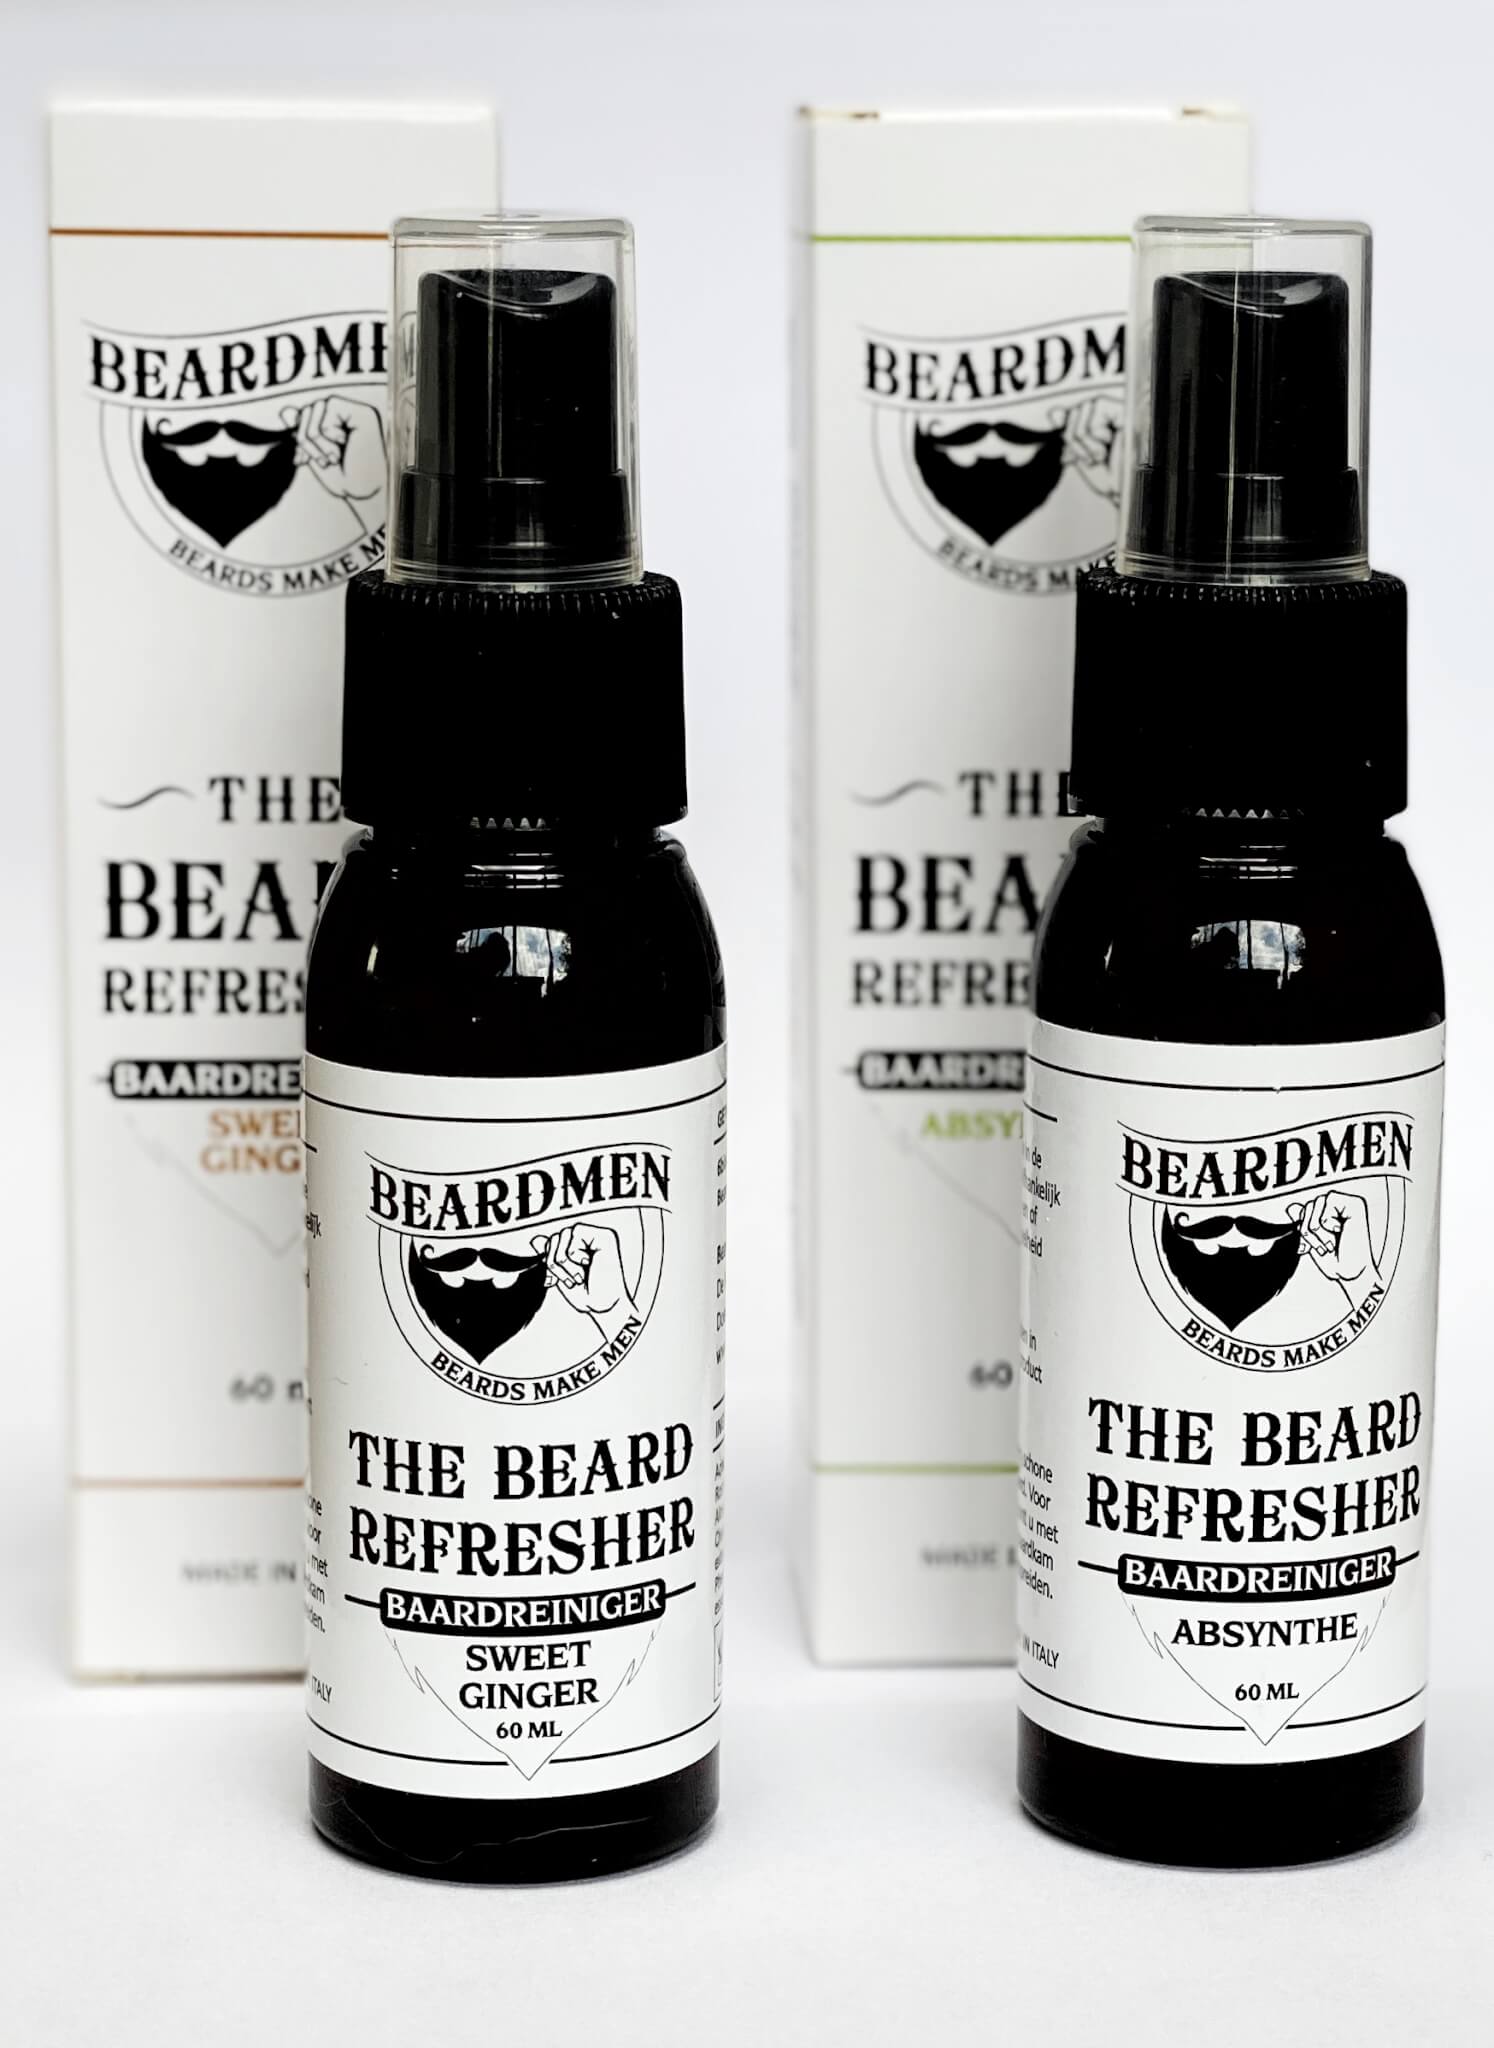 The Beard Refresher / baardreiniger van Beardmen